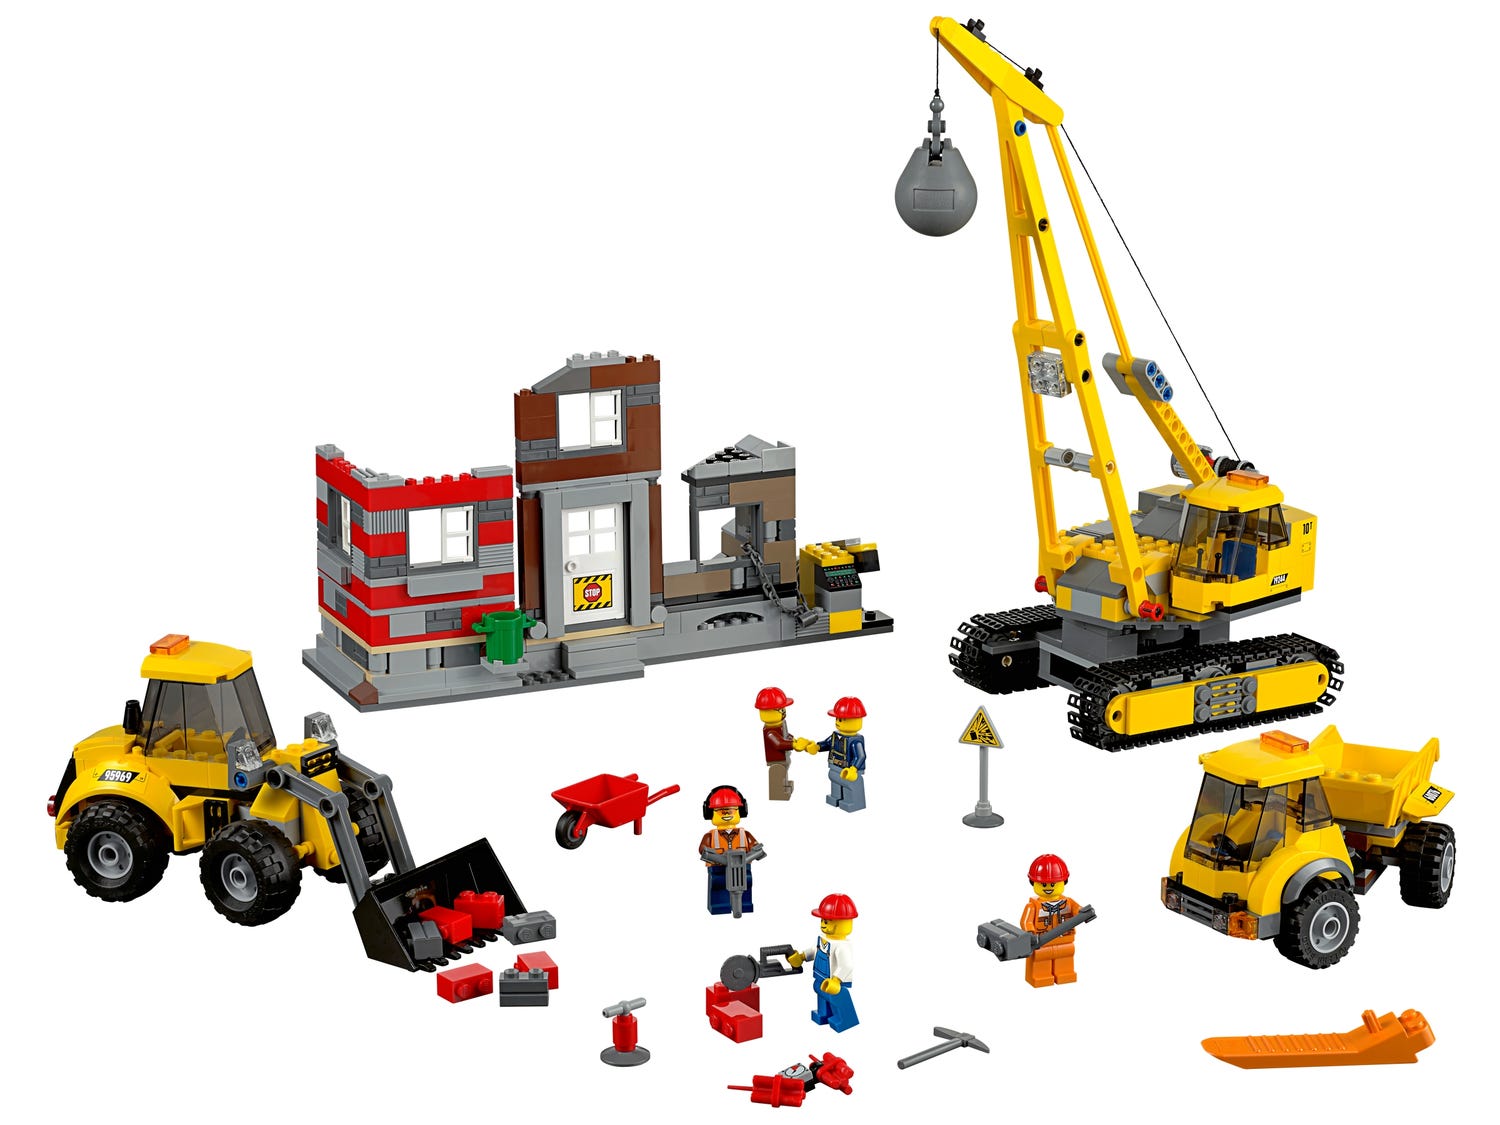 Rodeo Hukommelse Natur Demolition Site 60076 | City | Buy online at the Official LEGO® Shop US